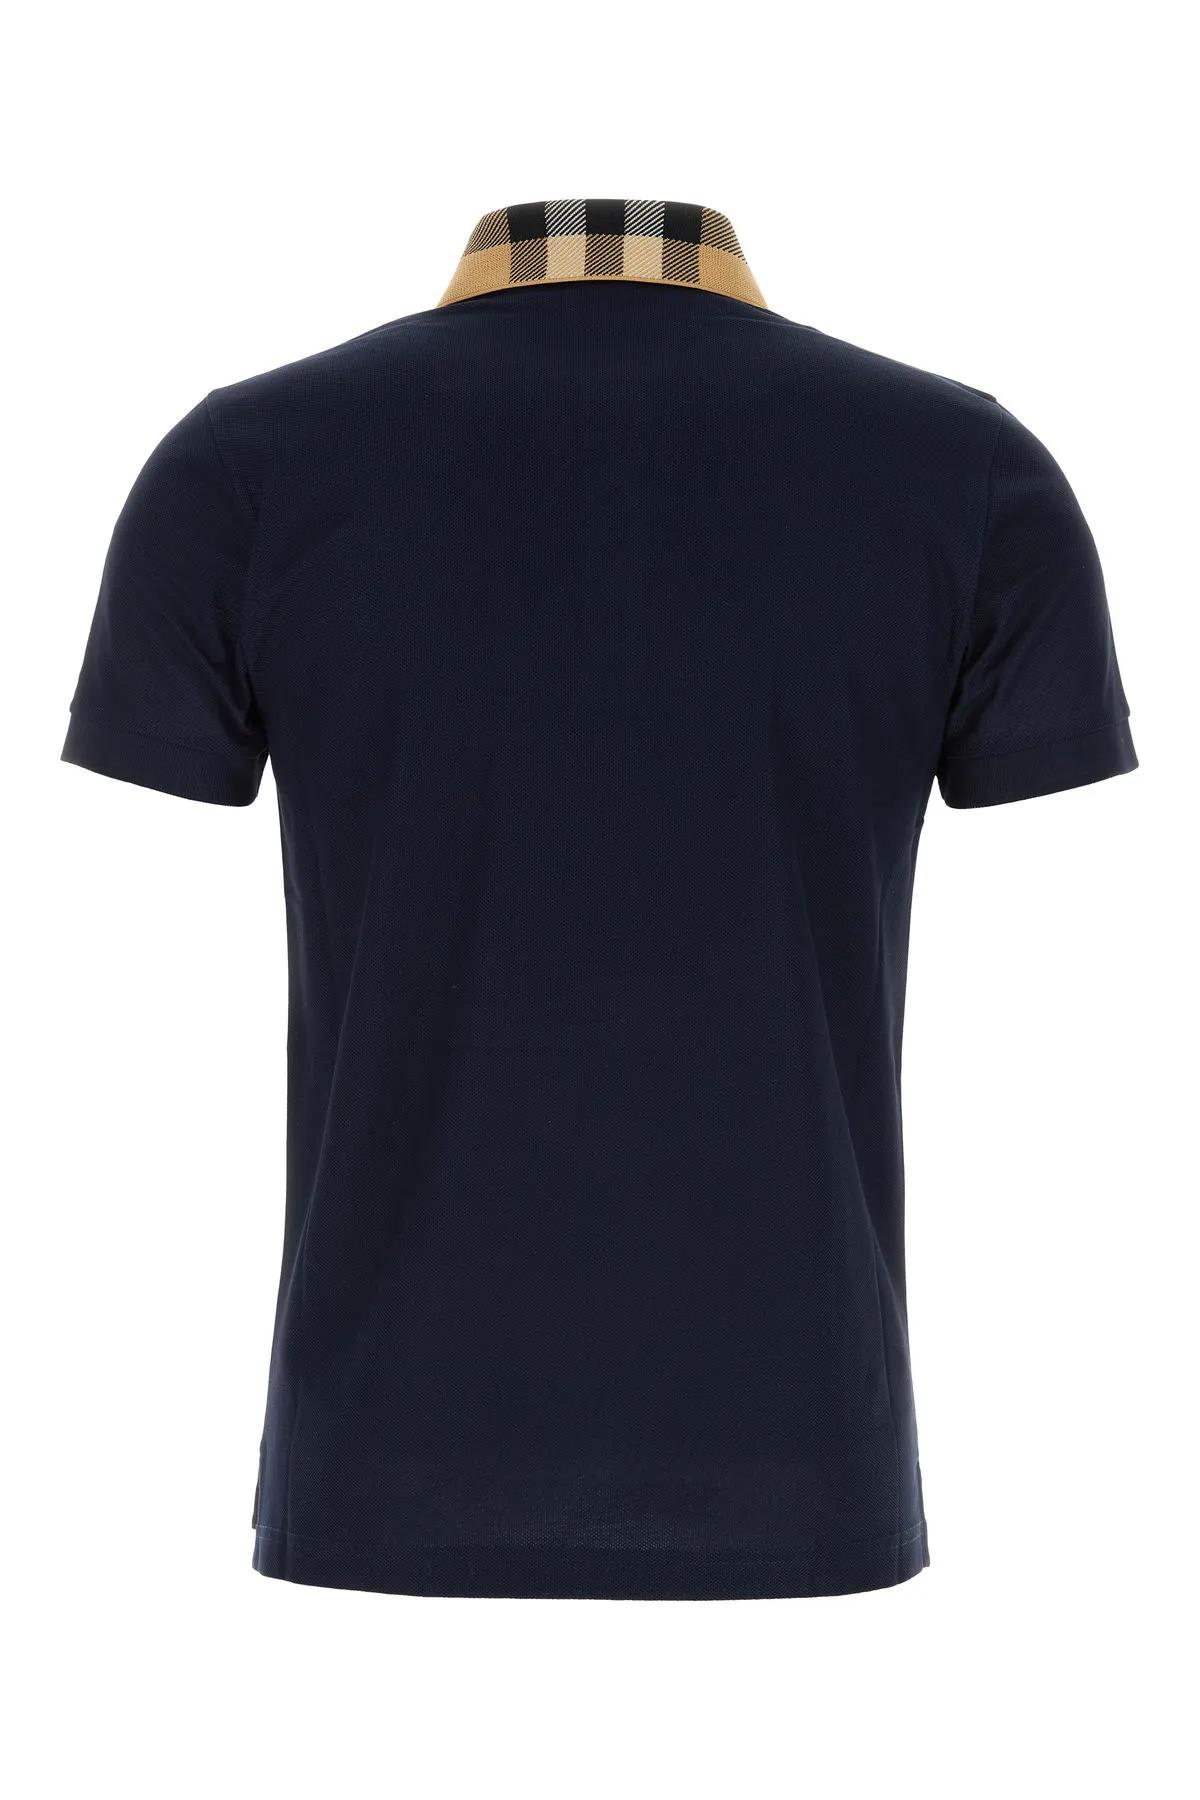 Burberry Men's Sport Shirt | Smart Closet